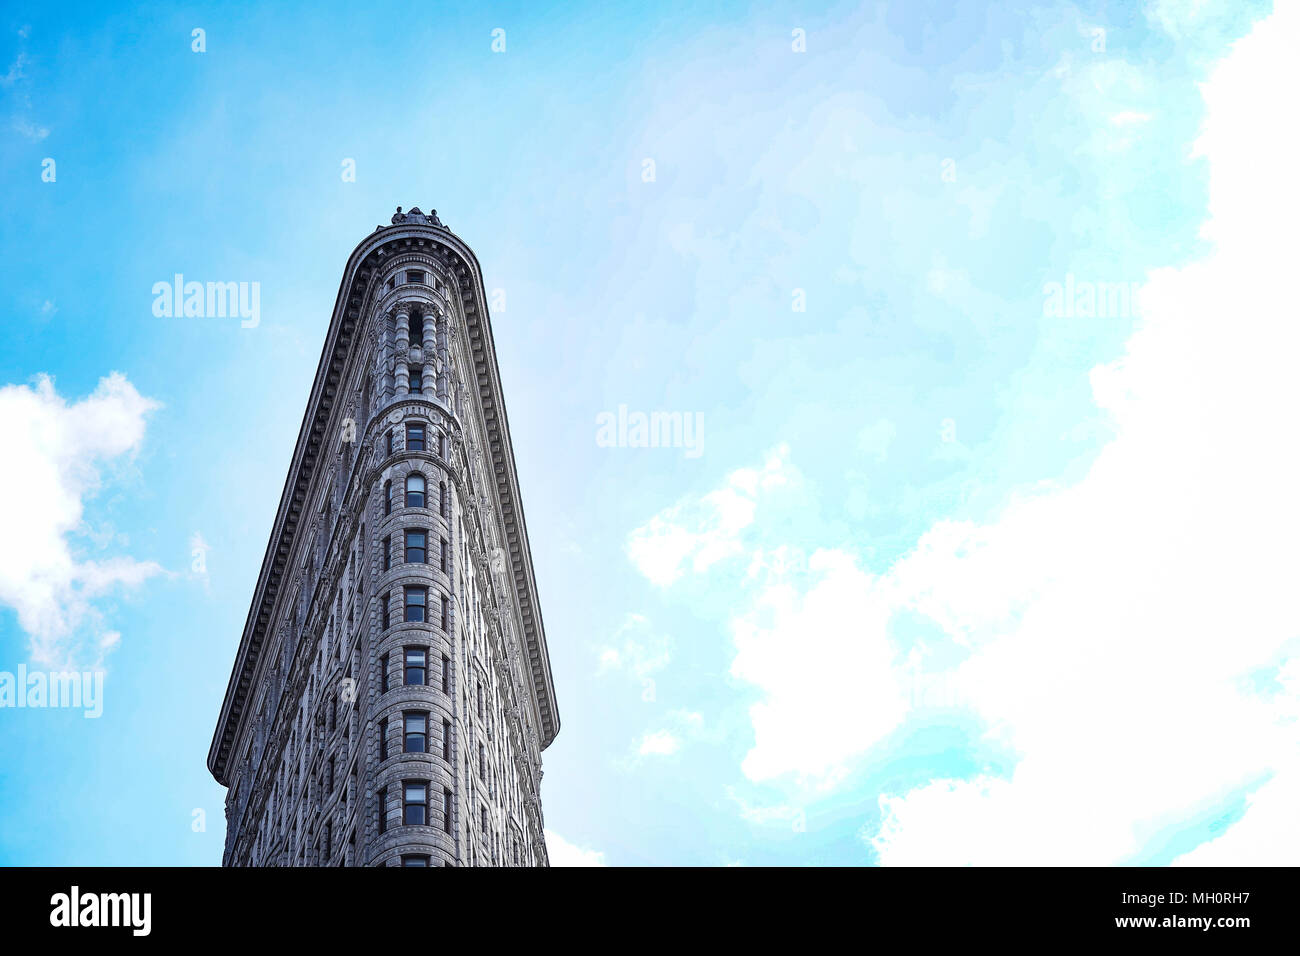 Das Flat Iron Building in New York City in den Vereinigten Staaten. Aus einer Reihe von Fotos in den Vereinigten Staaten. Foto Datum: Sonntag, 8. April 2018. Stockfoto